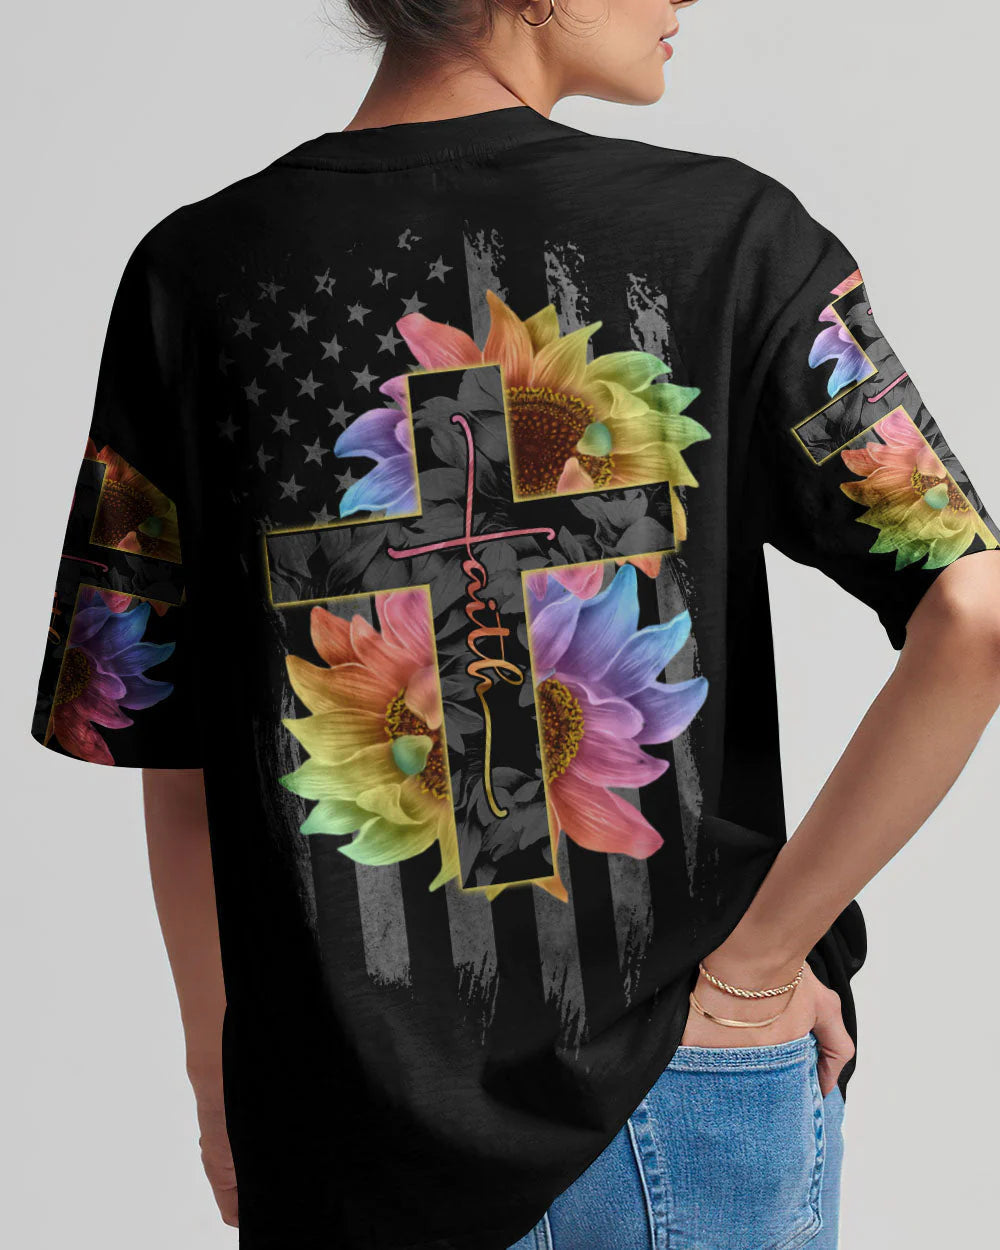 Christianartbag 3D T-Shirt For Women, Faith Rainbow Sunflower Cross Flag, Christian Shirt, Faithful Fashion, 3D Printed Shirts for Christian Women - Christian Art Bag